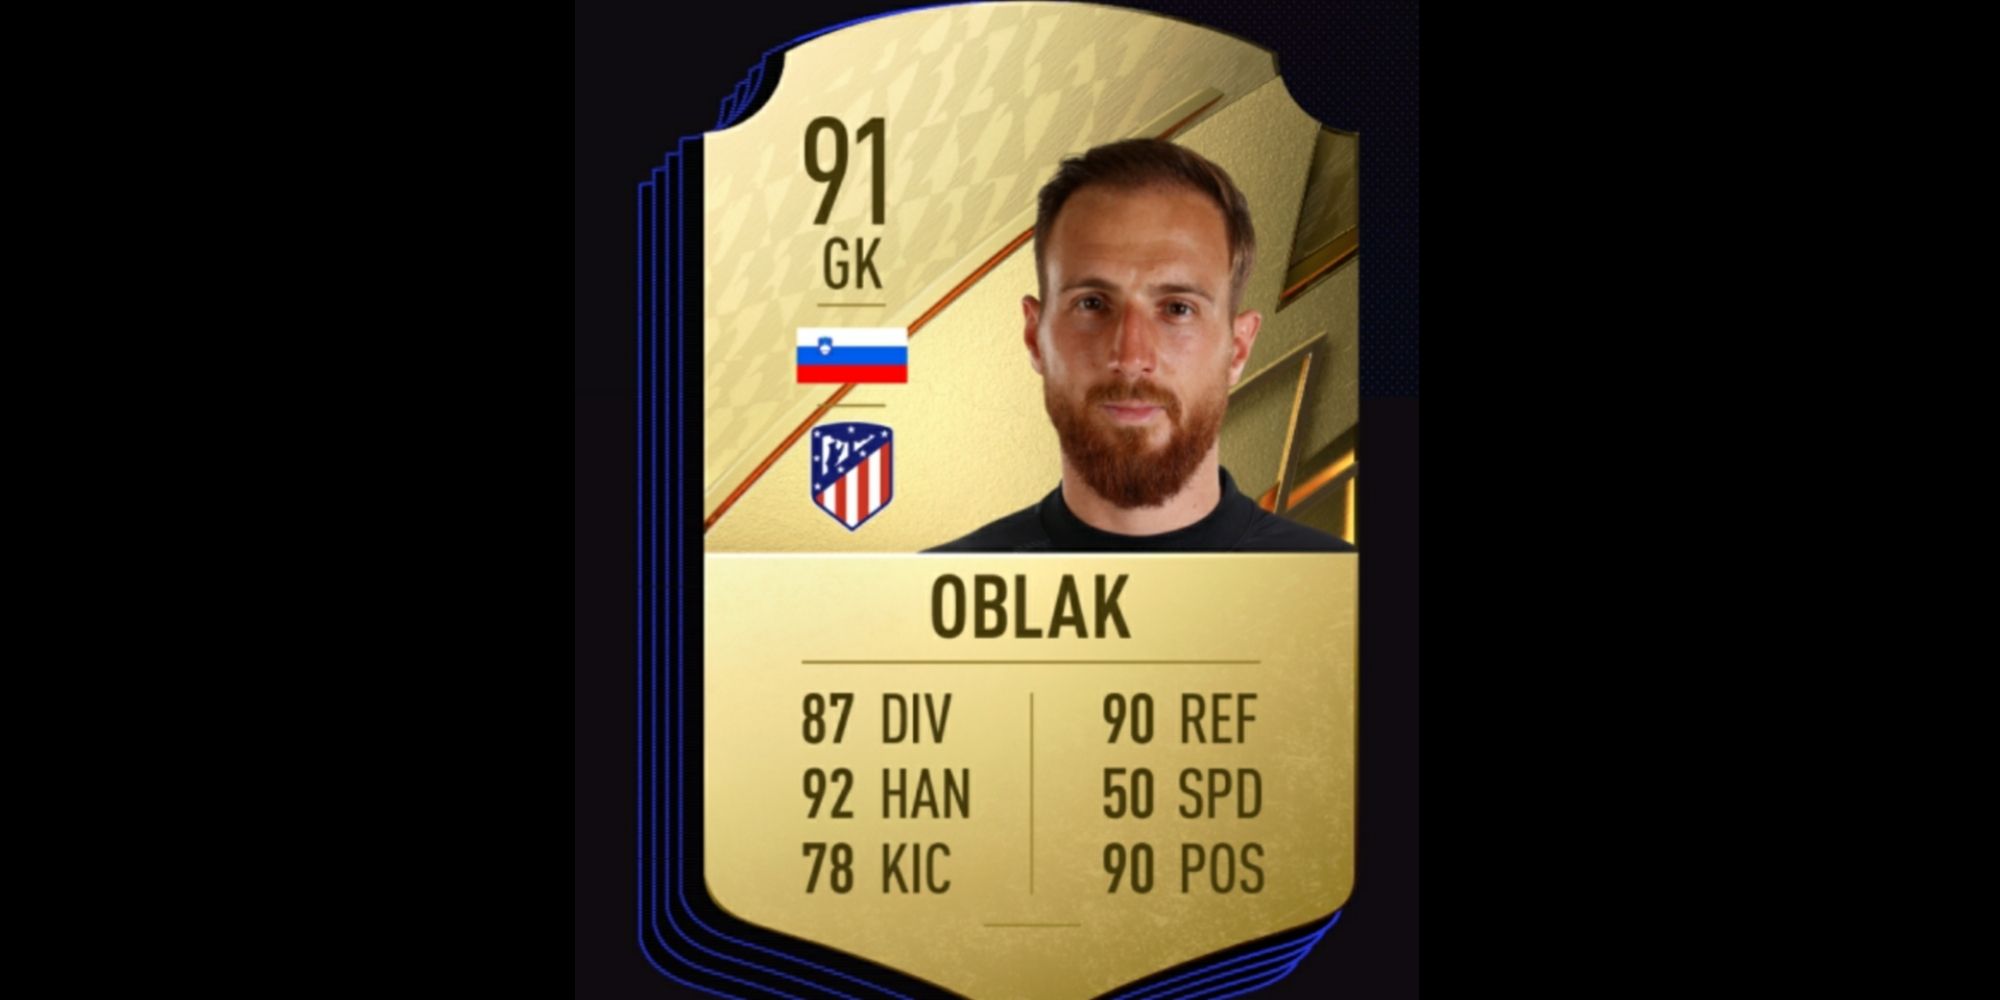 Oblak card in FIFA 22